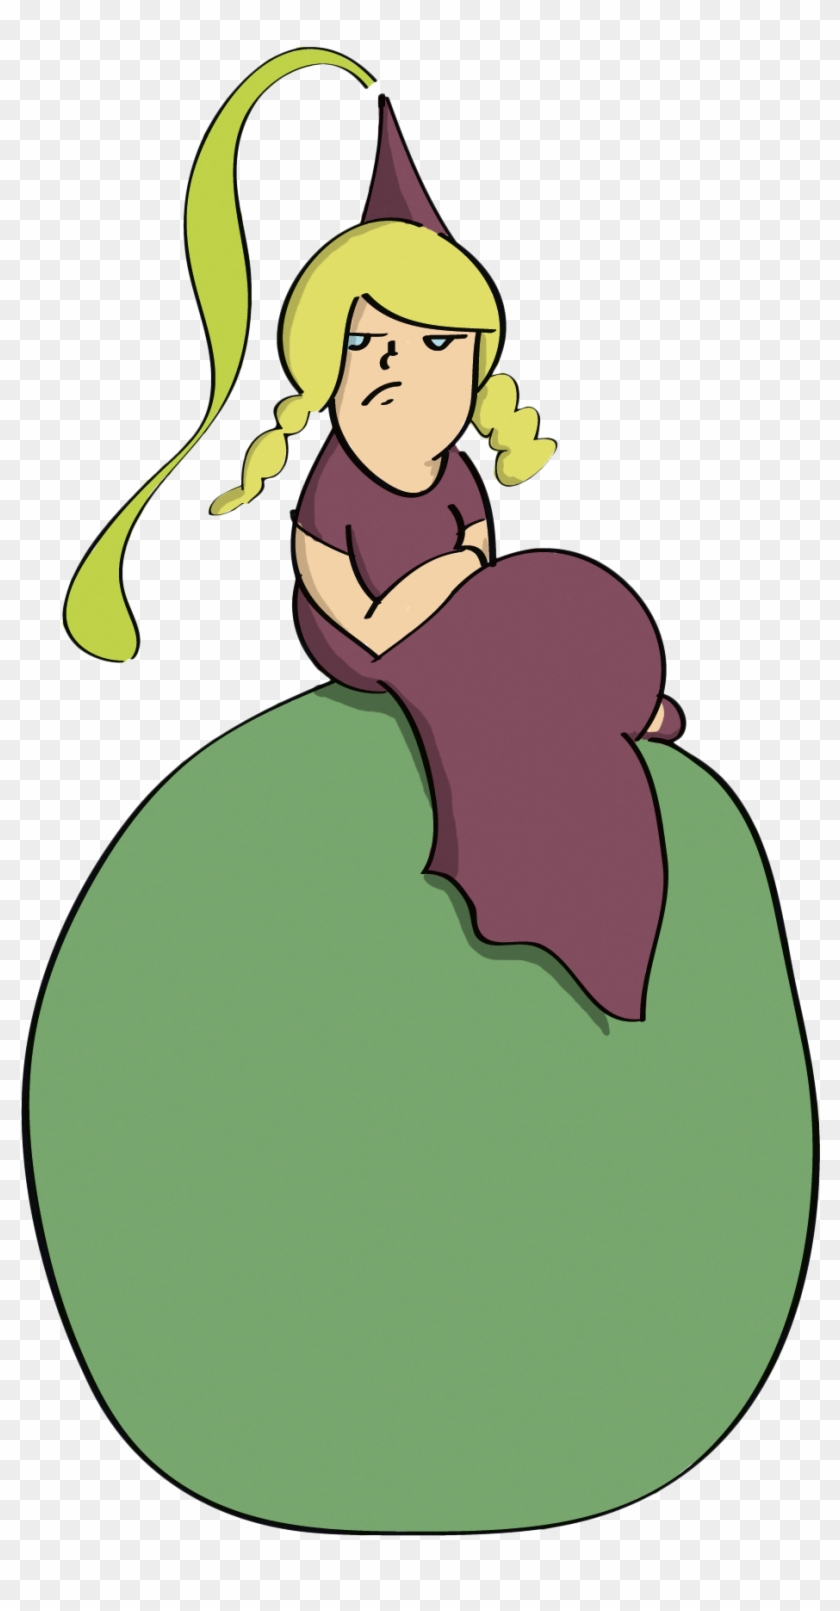 The Princess And The Pea Fairy Tale Clip Art - The Princess And The Pea #387118